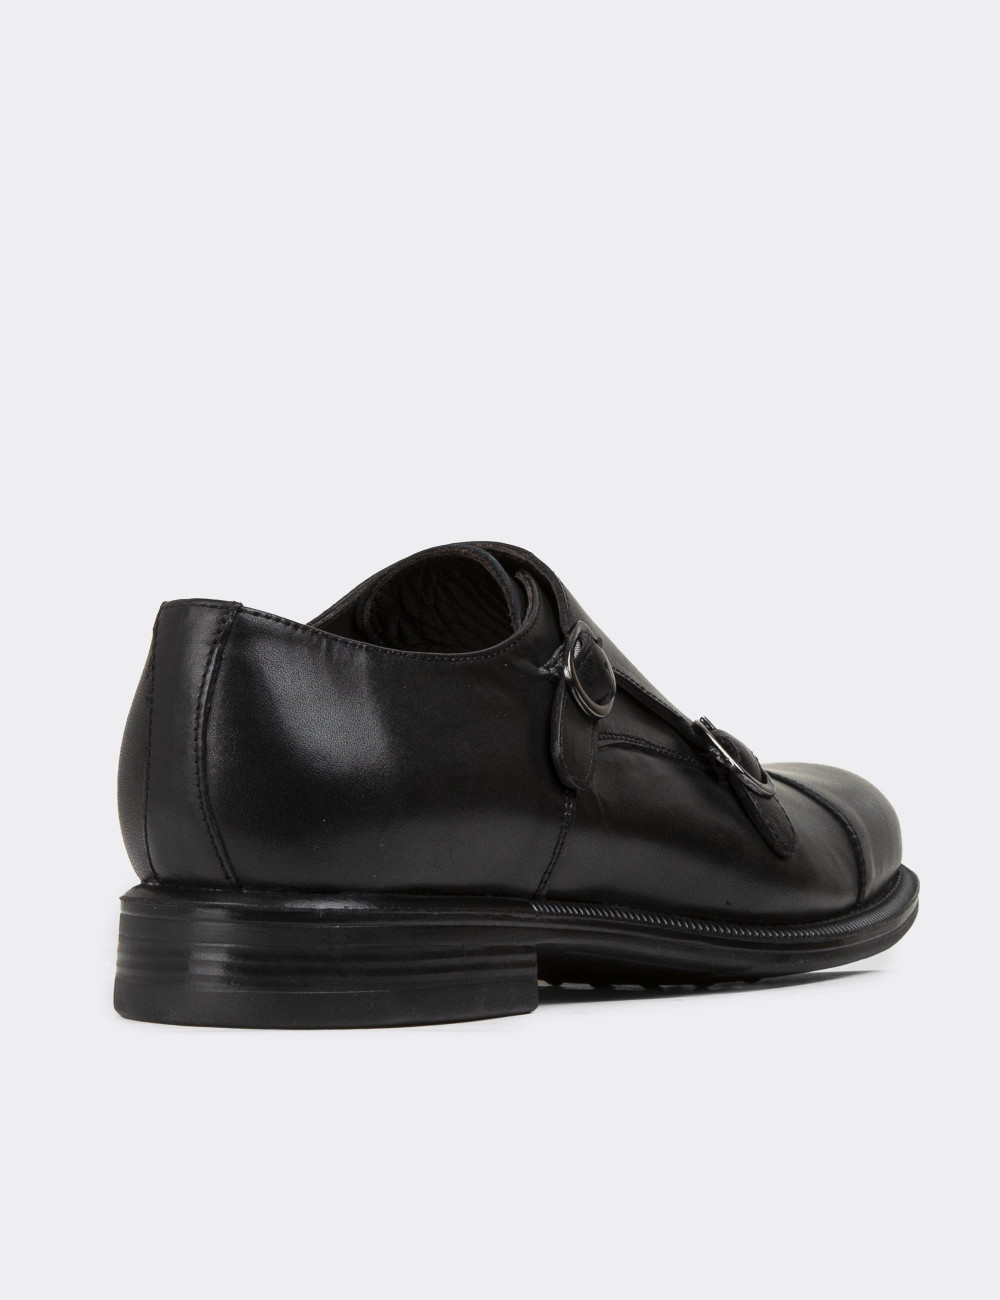 Hakiki Deri Çift Tokalı Siyah Erkek Klasik Ayakkabı - 01838MSYHC01